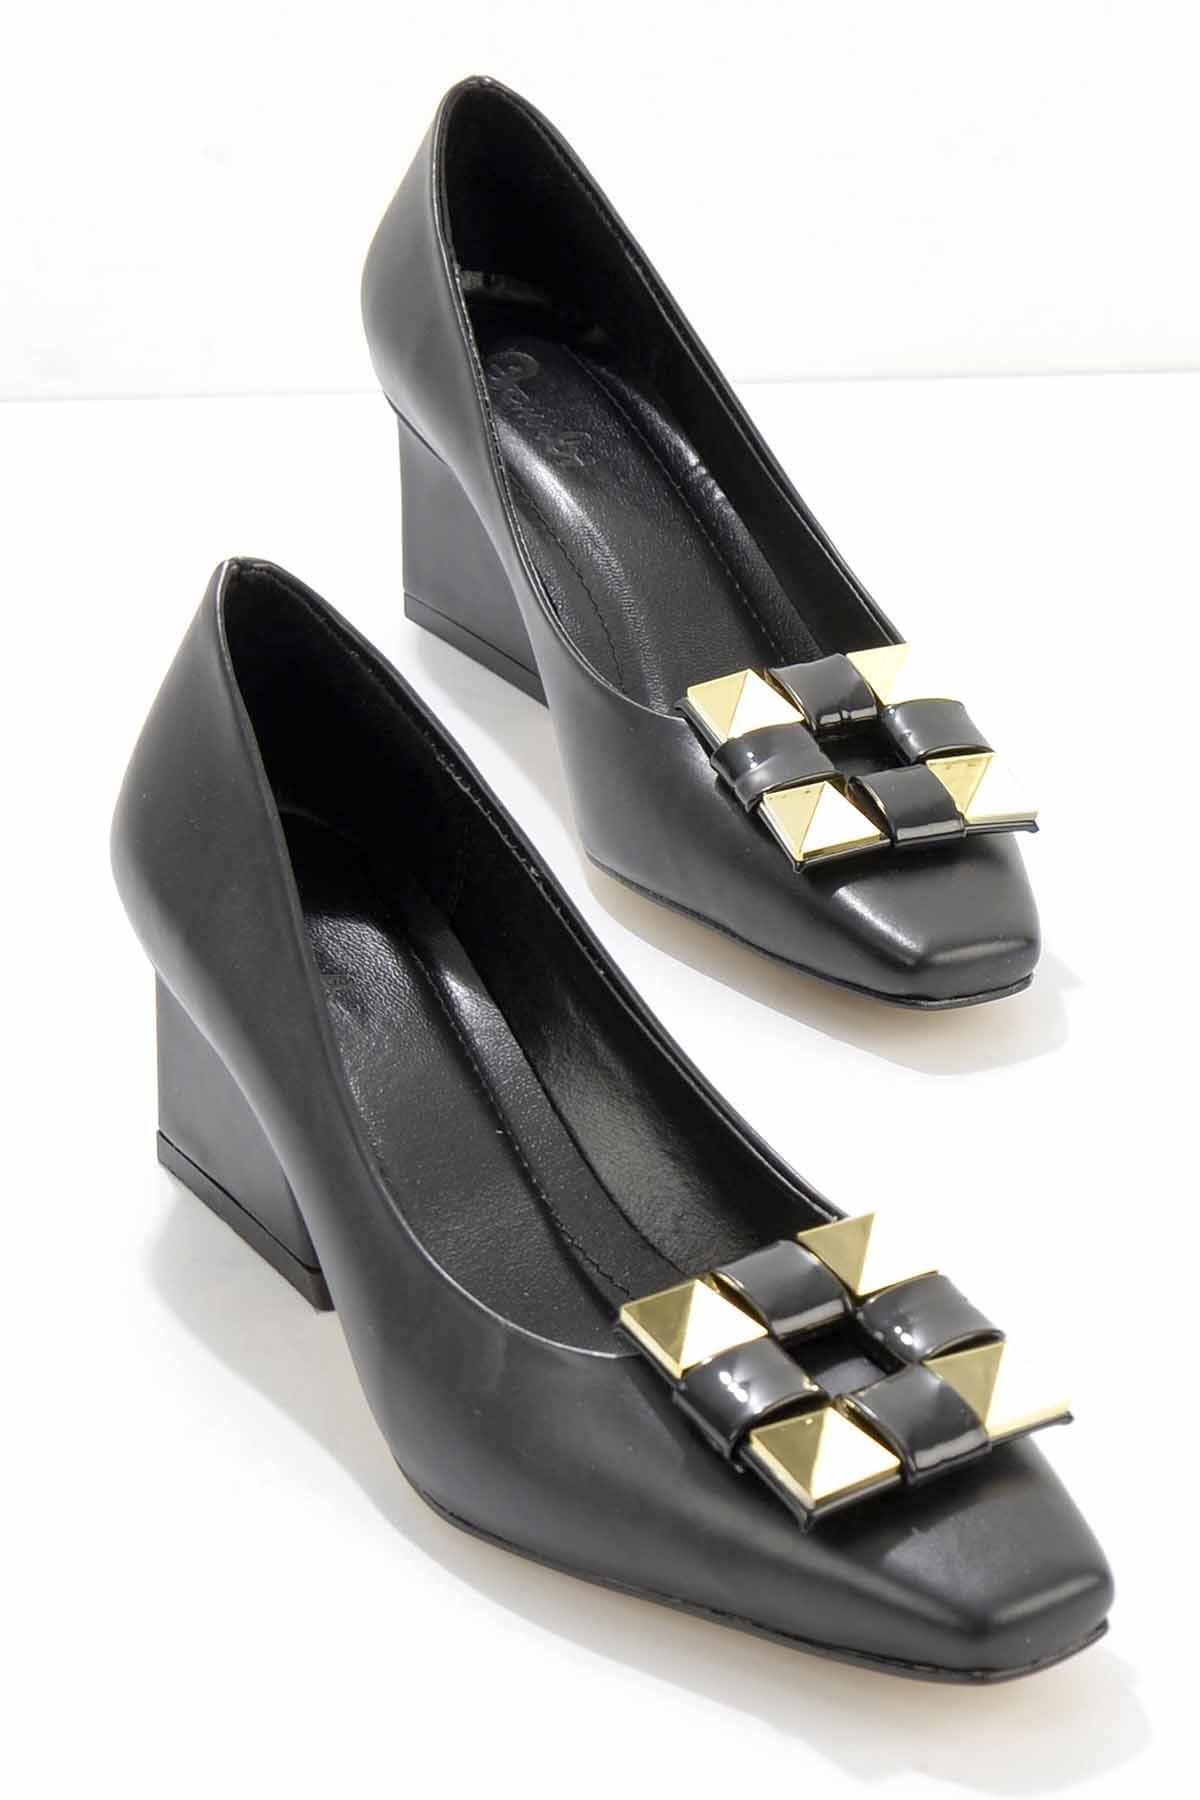 Bambi Siyah Kadın Klasik Topuklu Ayakkabı K01188123309